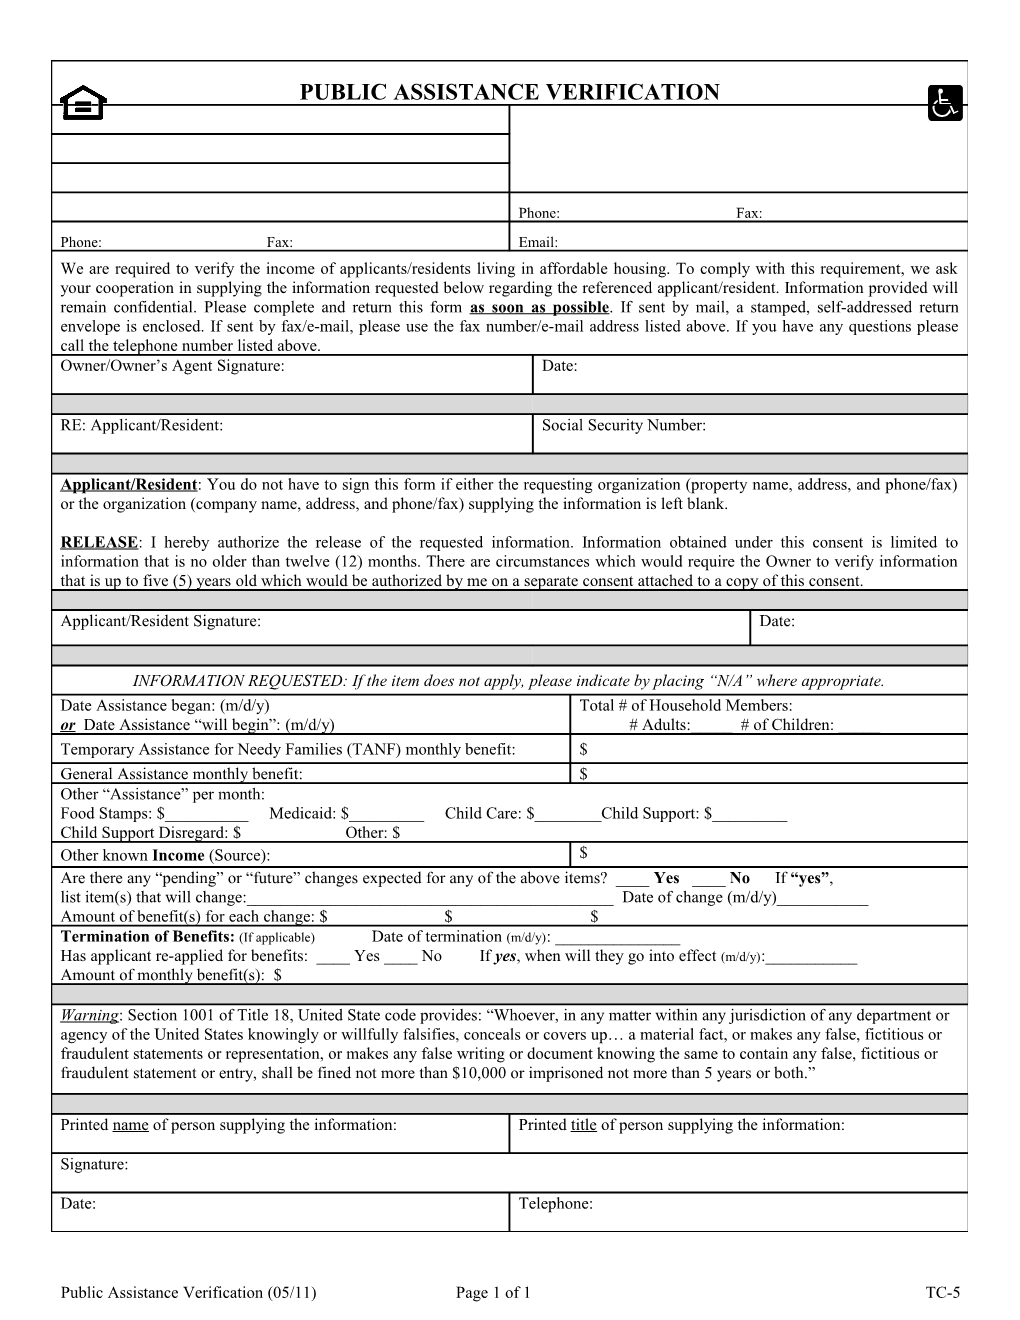 Public Assistance Verification (05/11)Page 1 of 1TC-5